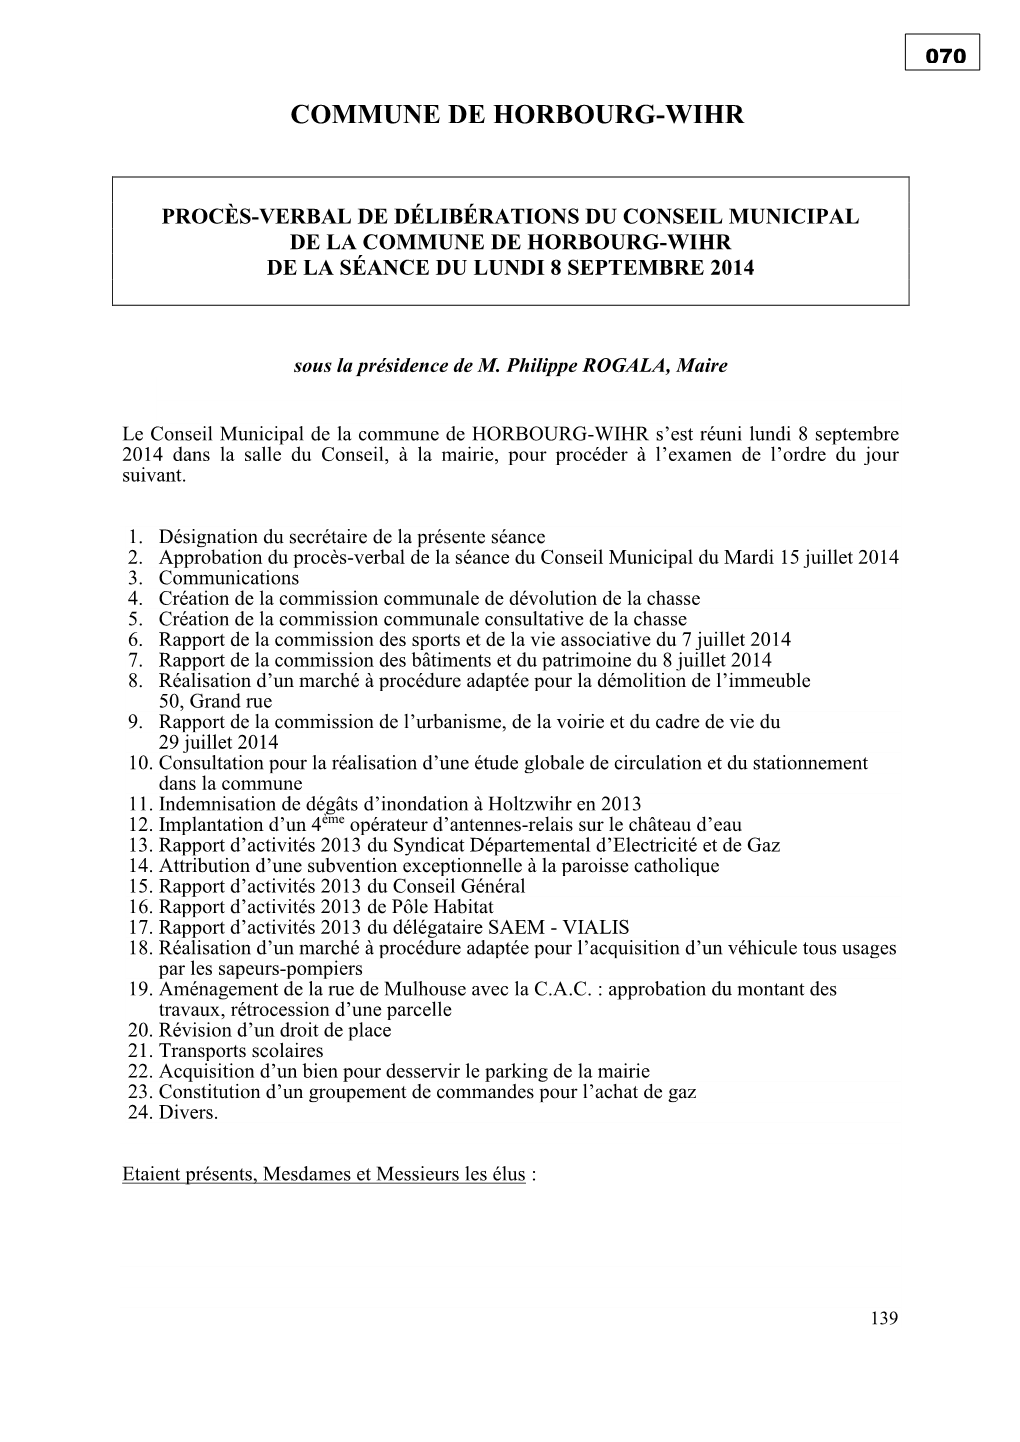 Procès-Verbal De Délibérations Du Conseil Municipal De La Commune De Horbourg-Wihr De La Séance Du Lundi 8 Septembre 2014